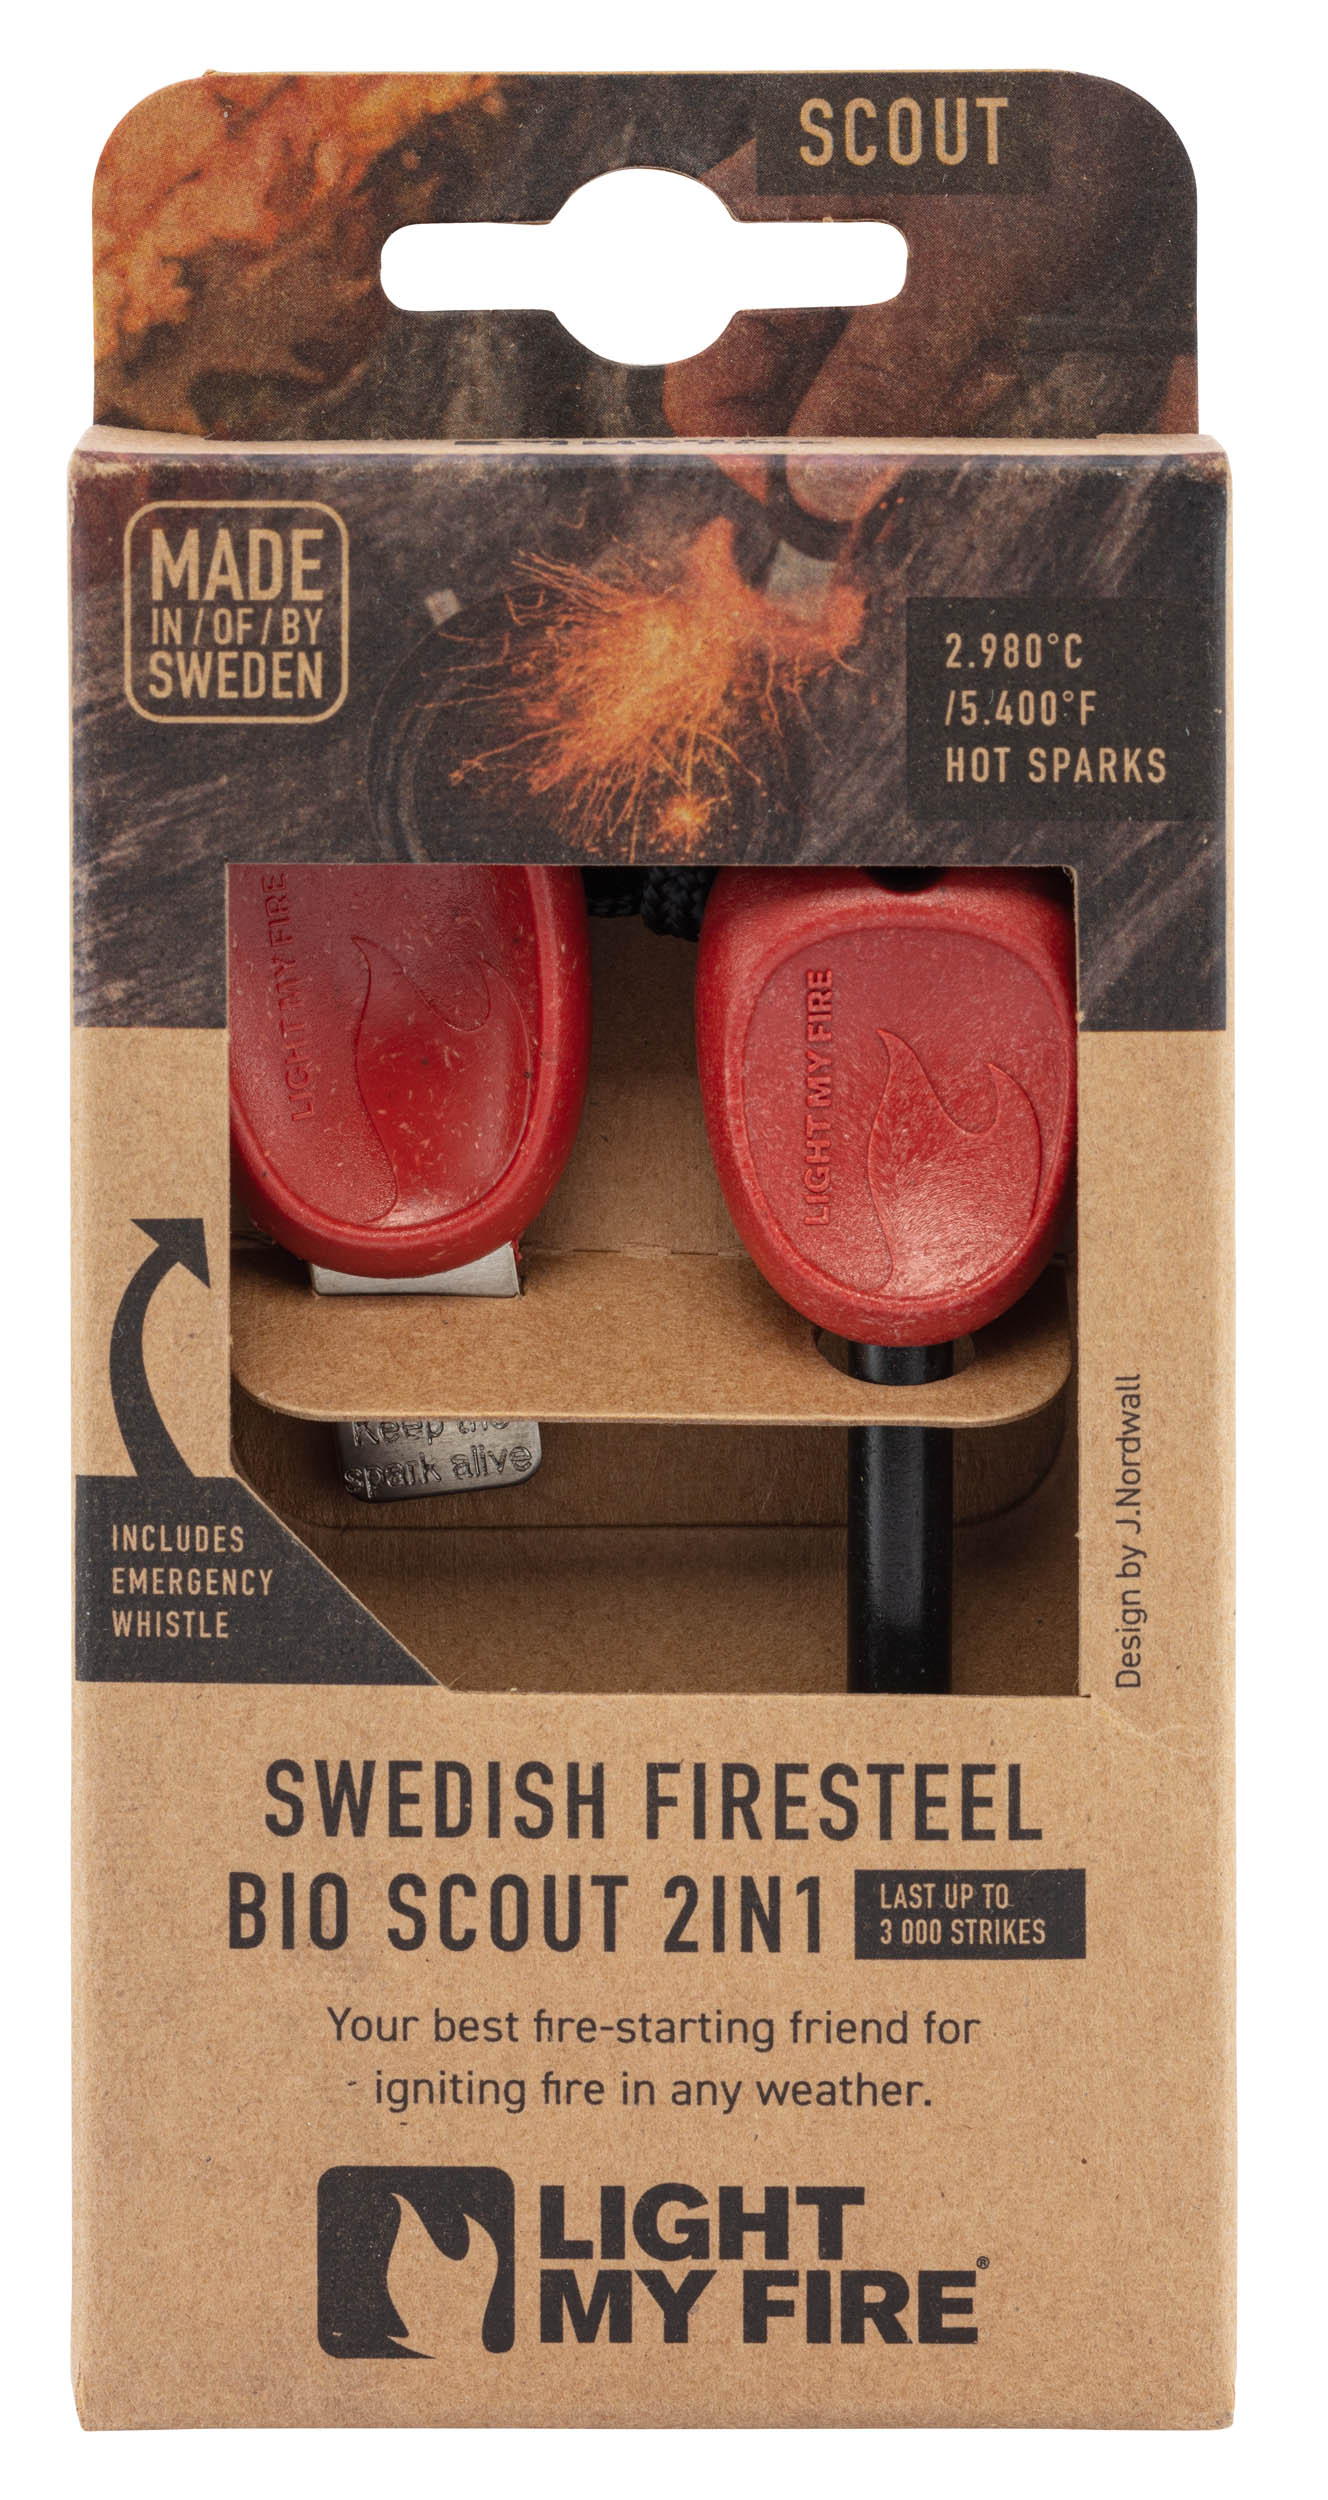 SWEDISH FIRESTEEL BIO SCOUT 2IN1